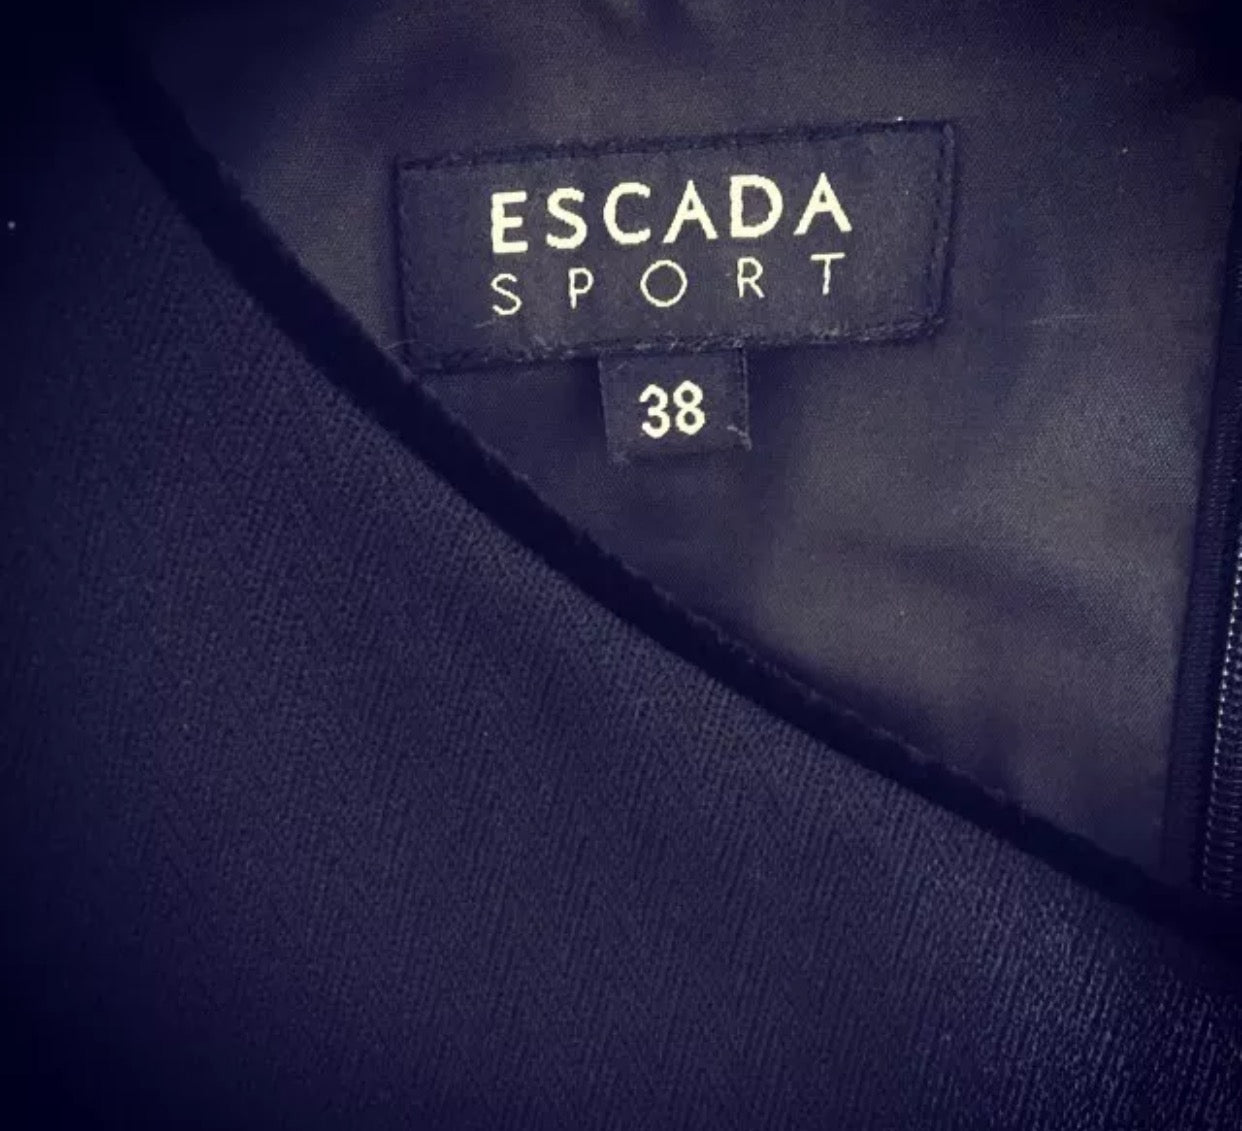 Escada Sport Dress - Vanity's Vault